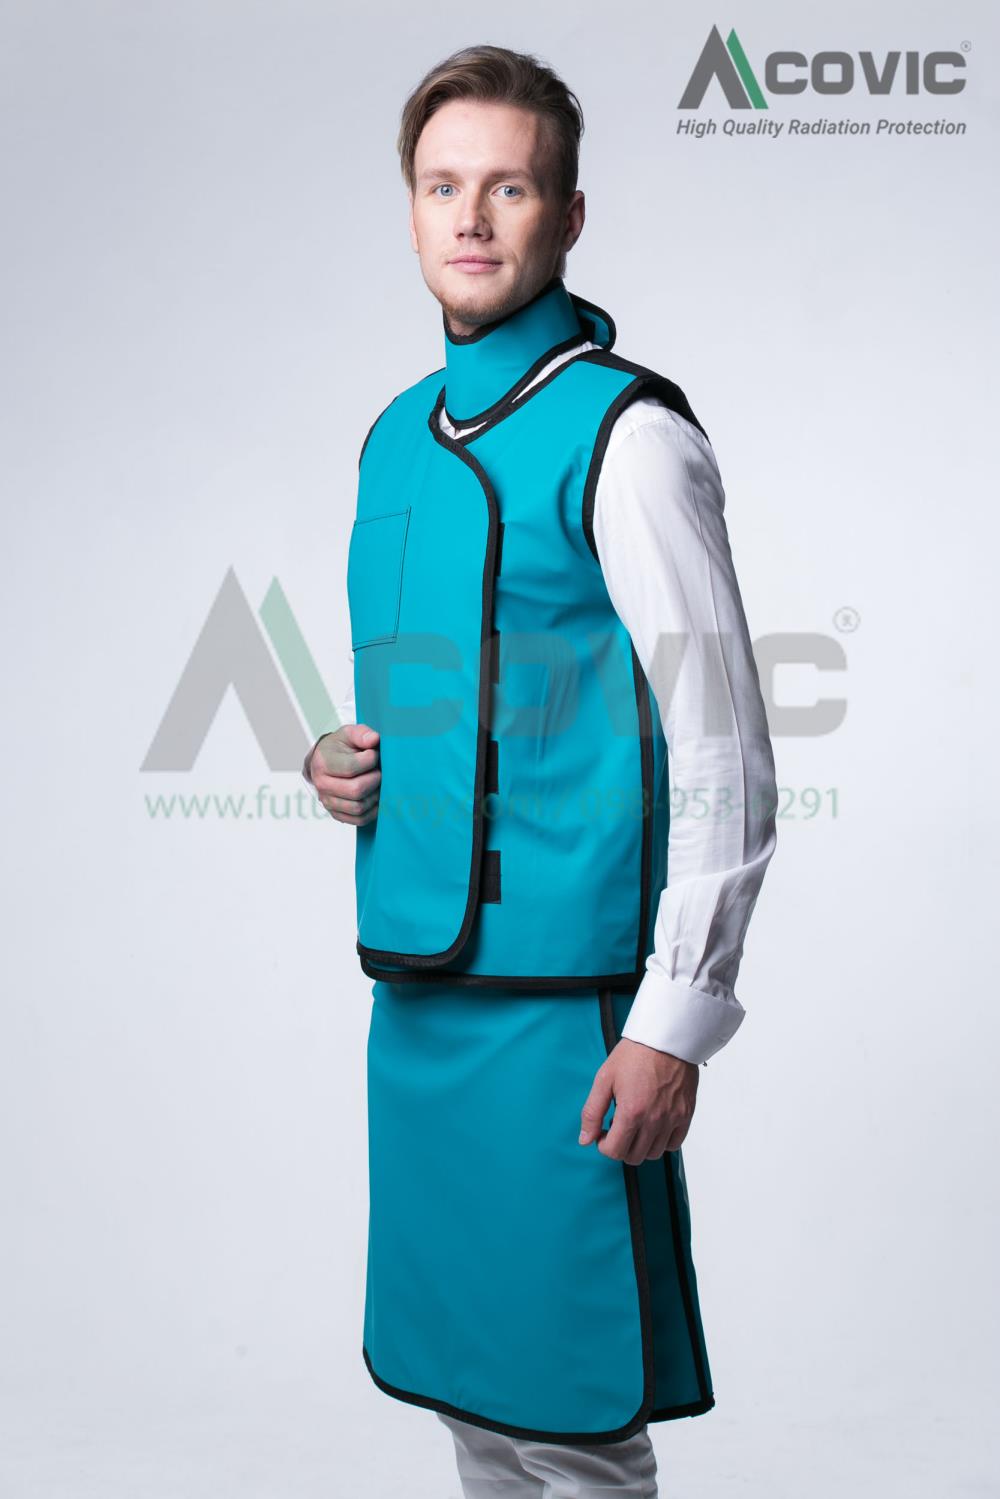 ชุด Vest & Skirt ป้องกันกันรังสี x-ray 0.5 mmPb,เสื้อกันรังสี,เสื้อตะกั่ว, lead aporn , เสื้อตะกั่วกันรังสี x-ray , ชุดกันรังสี x-ray , x-ray protective apron,ACOVIC,Plant and Facility Equipment/Safety Equipment/Protective Clothing